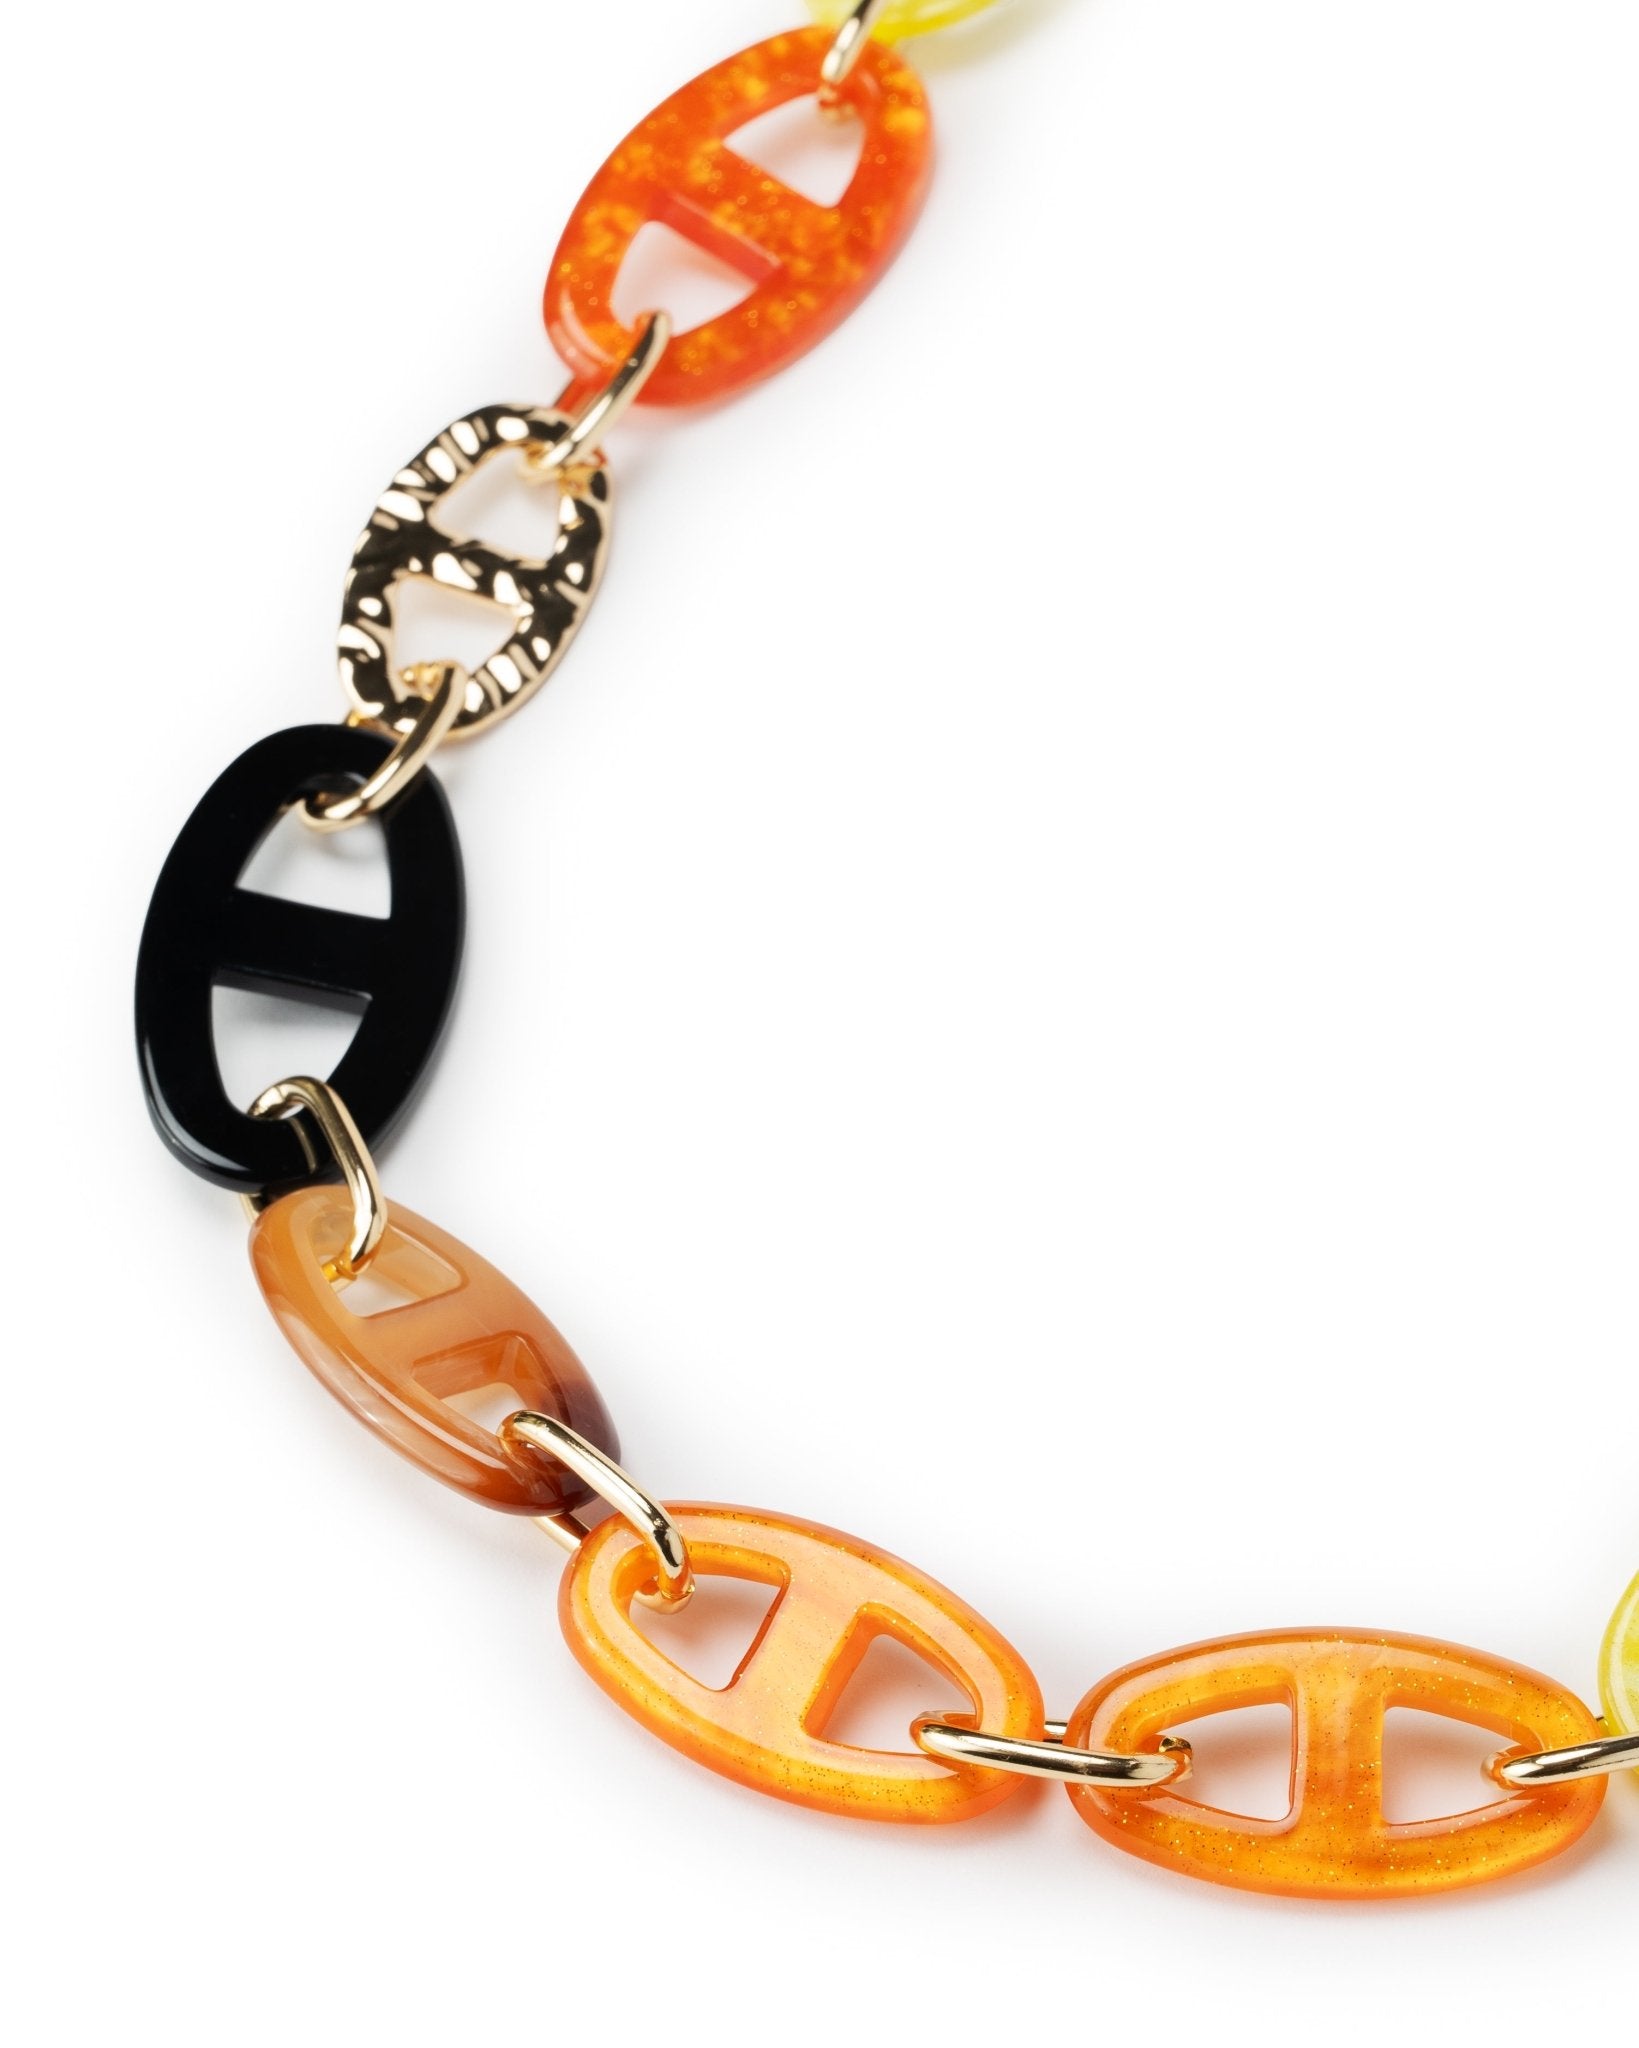 Collana lunga in metallo con inserti in acrilico arancio e gialli - Mya Accessories